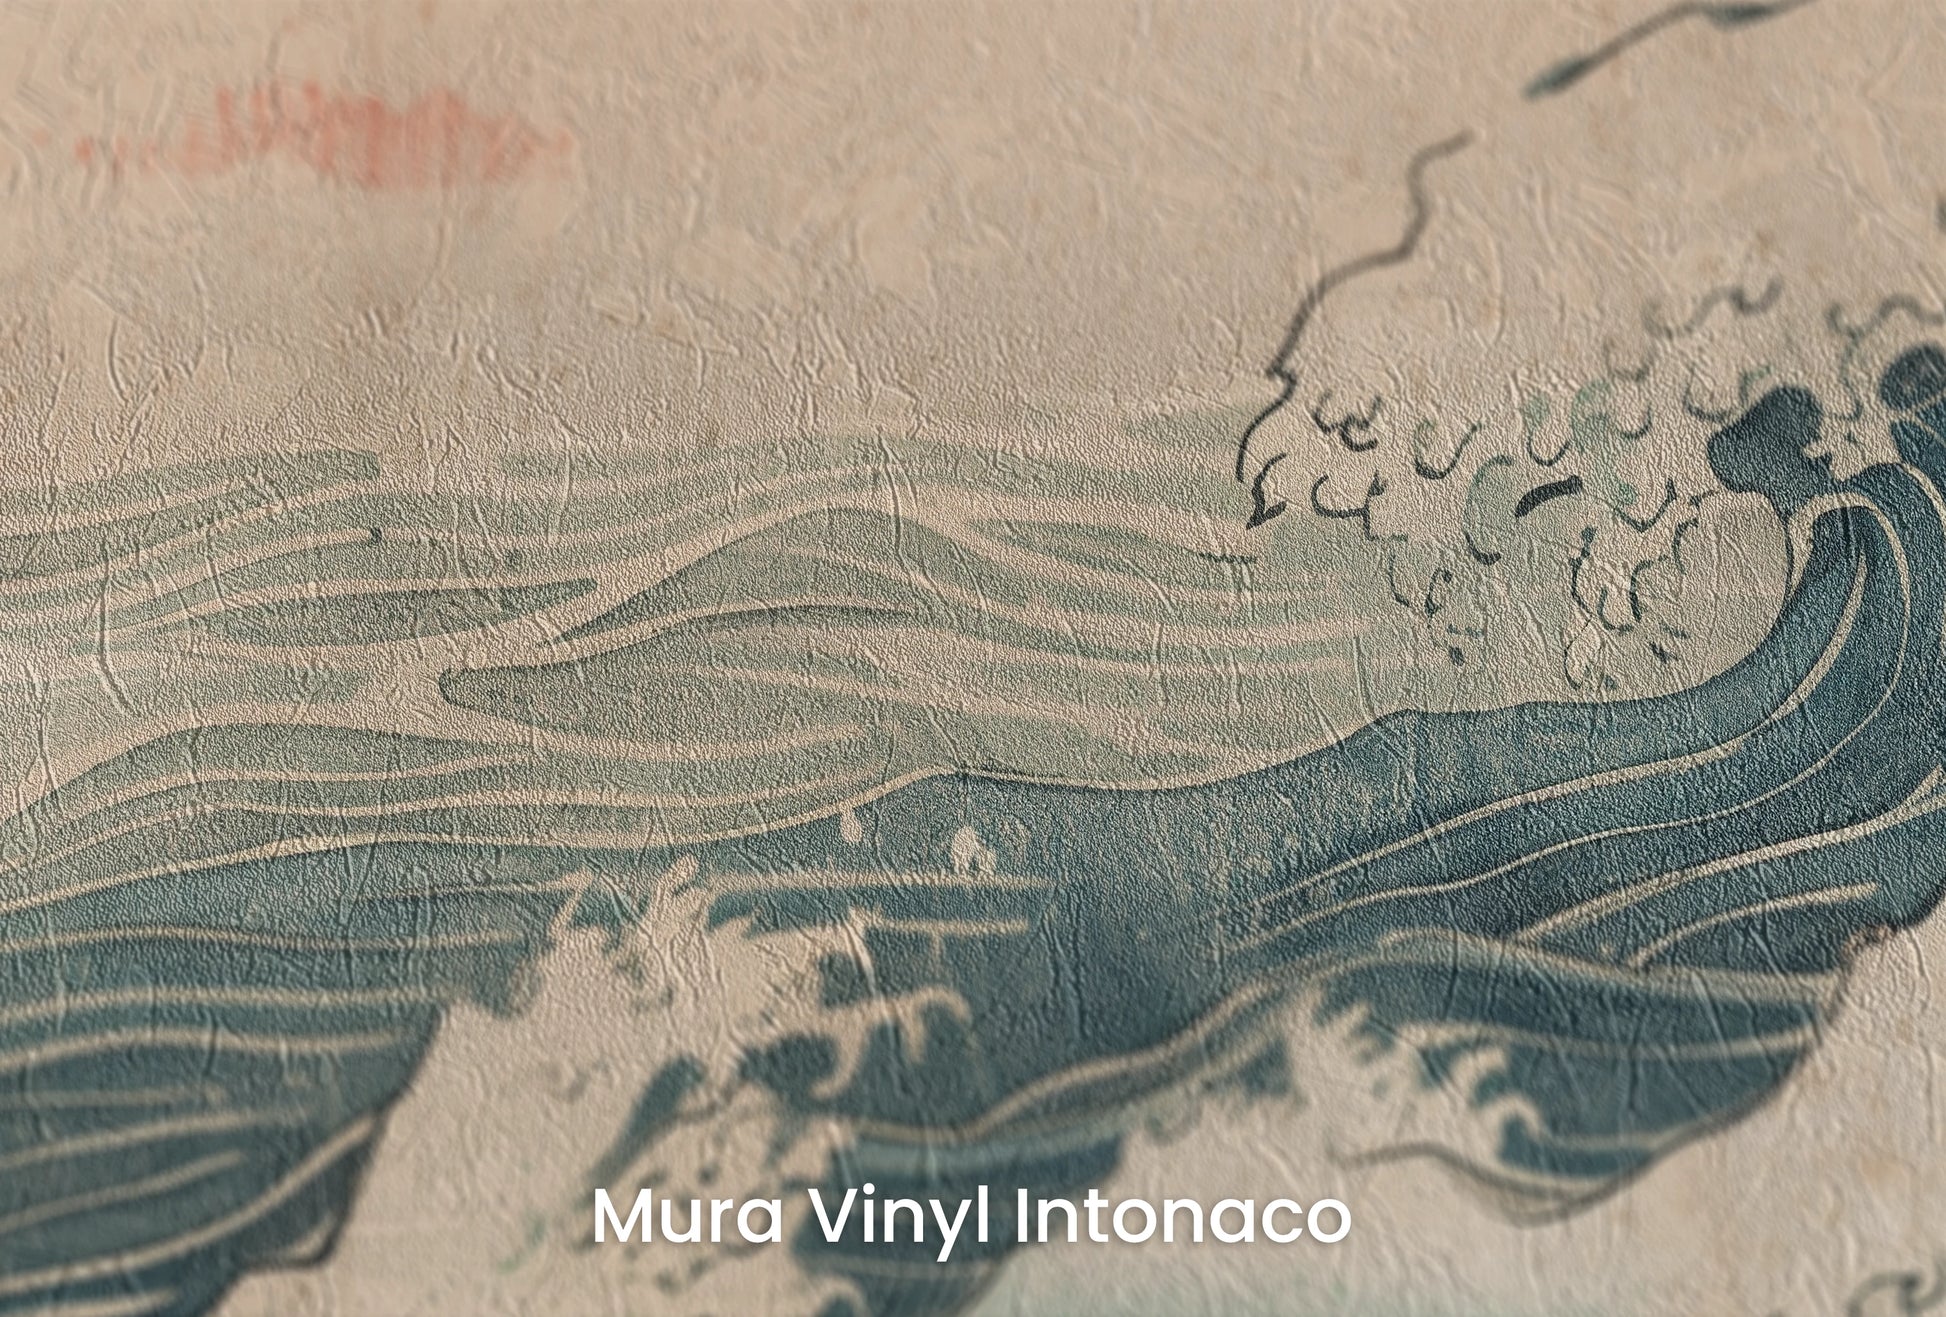 Zbliżenie na artystyczną fototapetę o nazwie Edo's Sunrise na podłożu Mura Vinyl Intonaco - struktura tartego tynku.